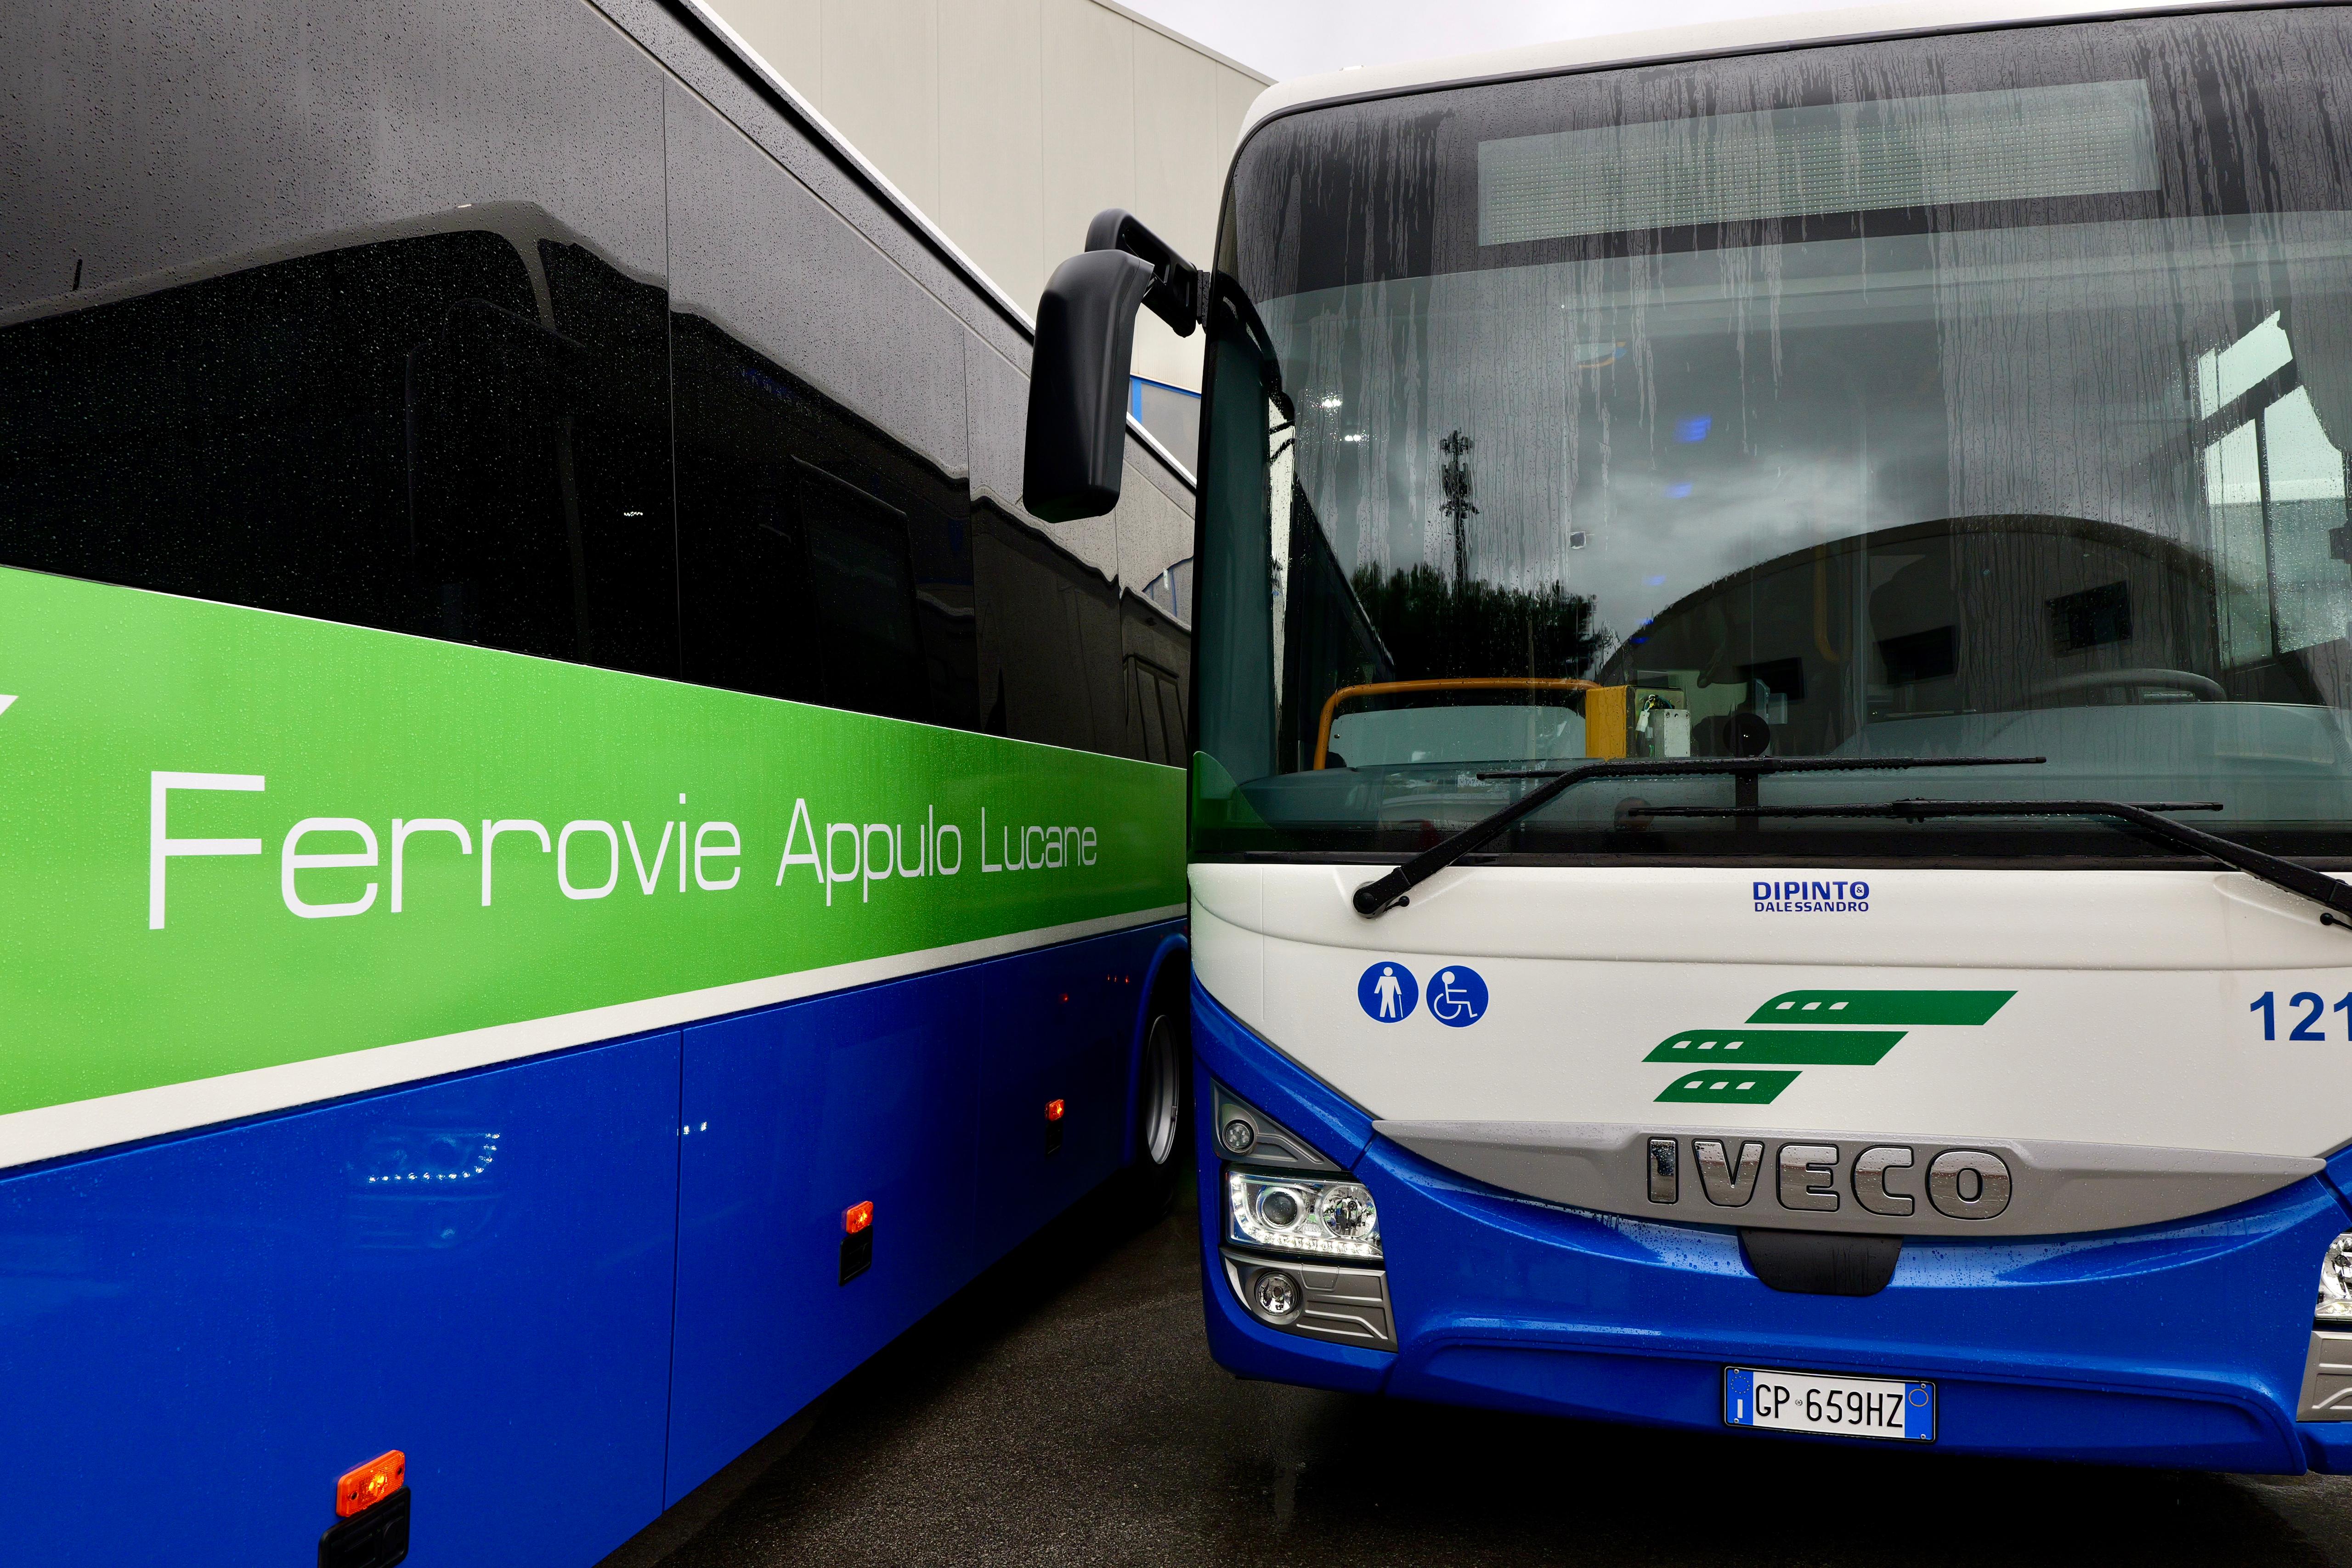 Galleria Trasporti, inaugurati 15 nuovi autobus FAL: l’azienda ha completato il rinnovo del parco mezzi pugliese, tra i più giovani d’Italia - Diapositiva 12 di 13